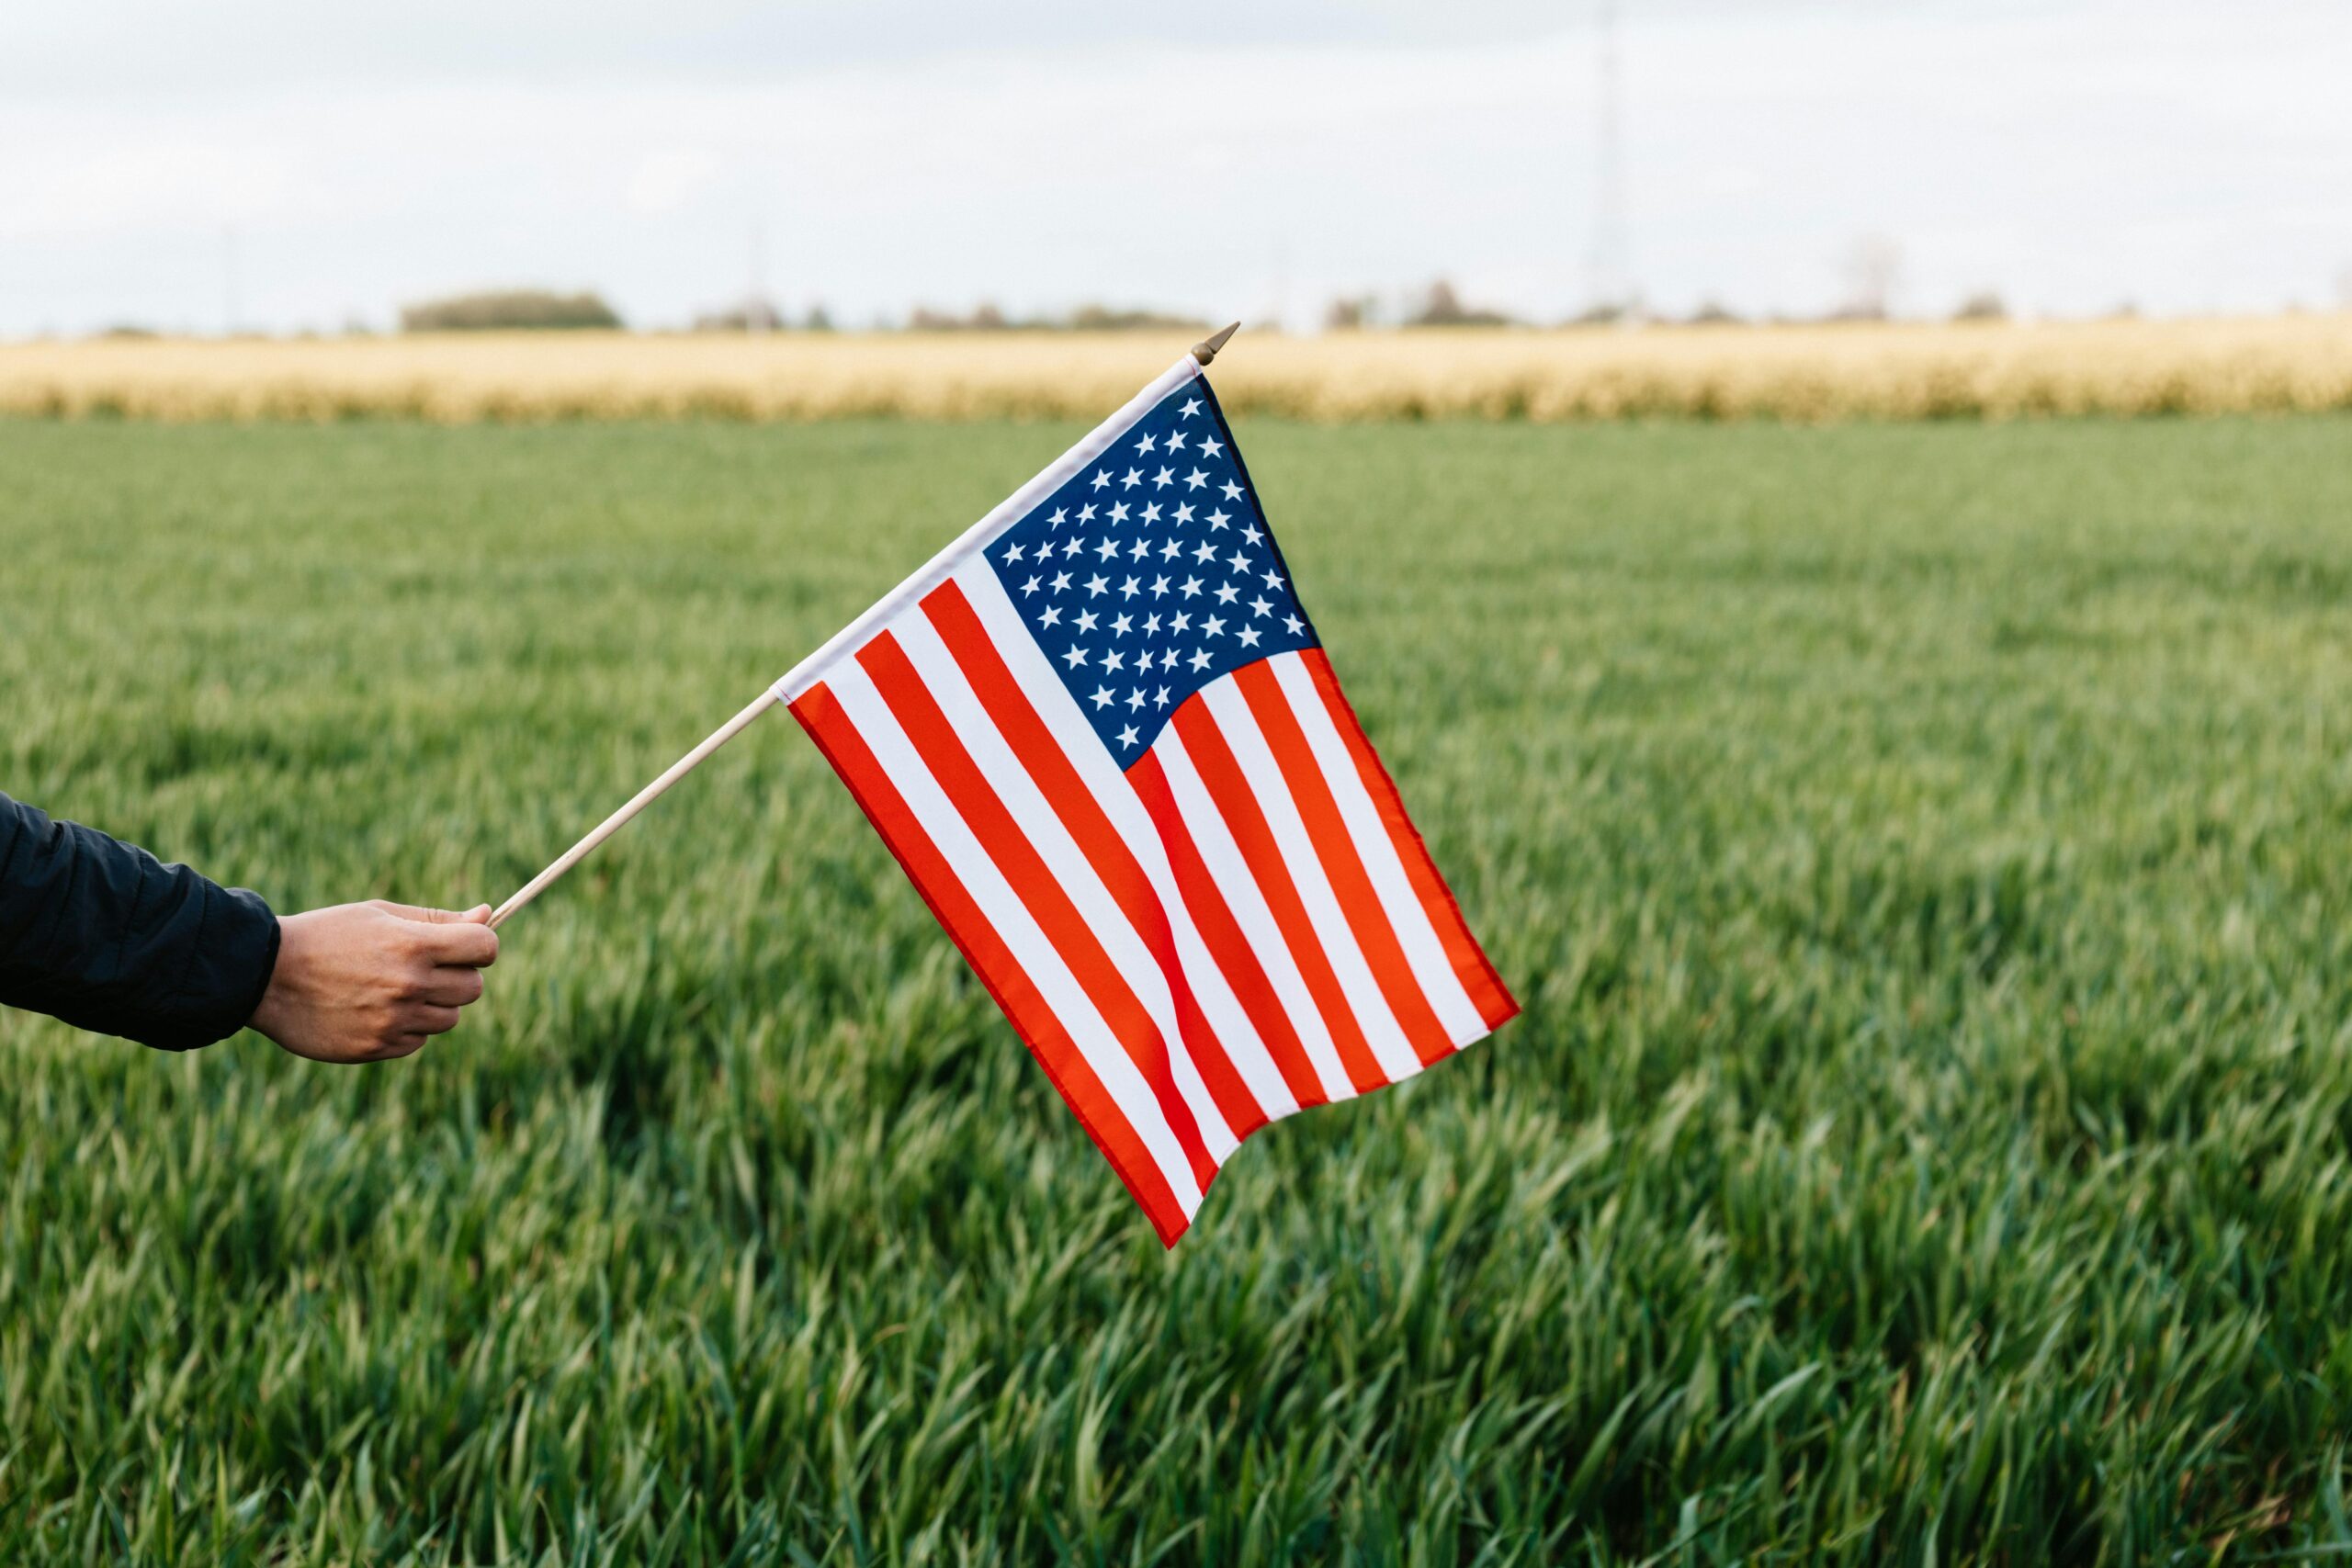 La imagen muestra una bandera estadounidense sostenida por una mano, ondeando contra un fondo de campo verde. La bandera es clara y vibrante, con sus franjas rojas y blancas y un campo de estrellas en un fondo azul. El entorno rural y la composición de la imagen capturan un sentido de patriotismo y tranquilidad natural.